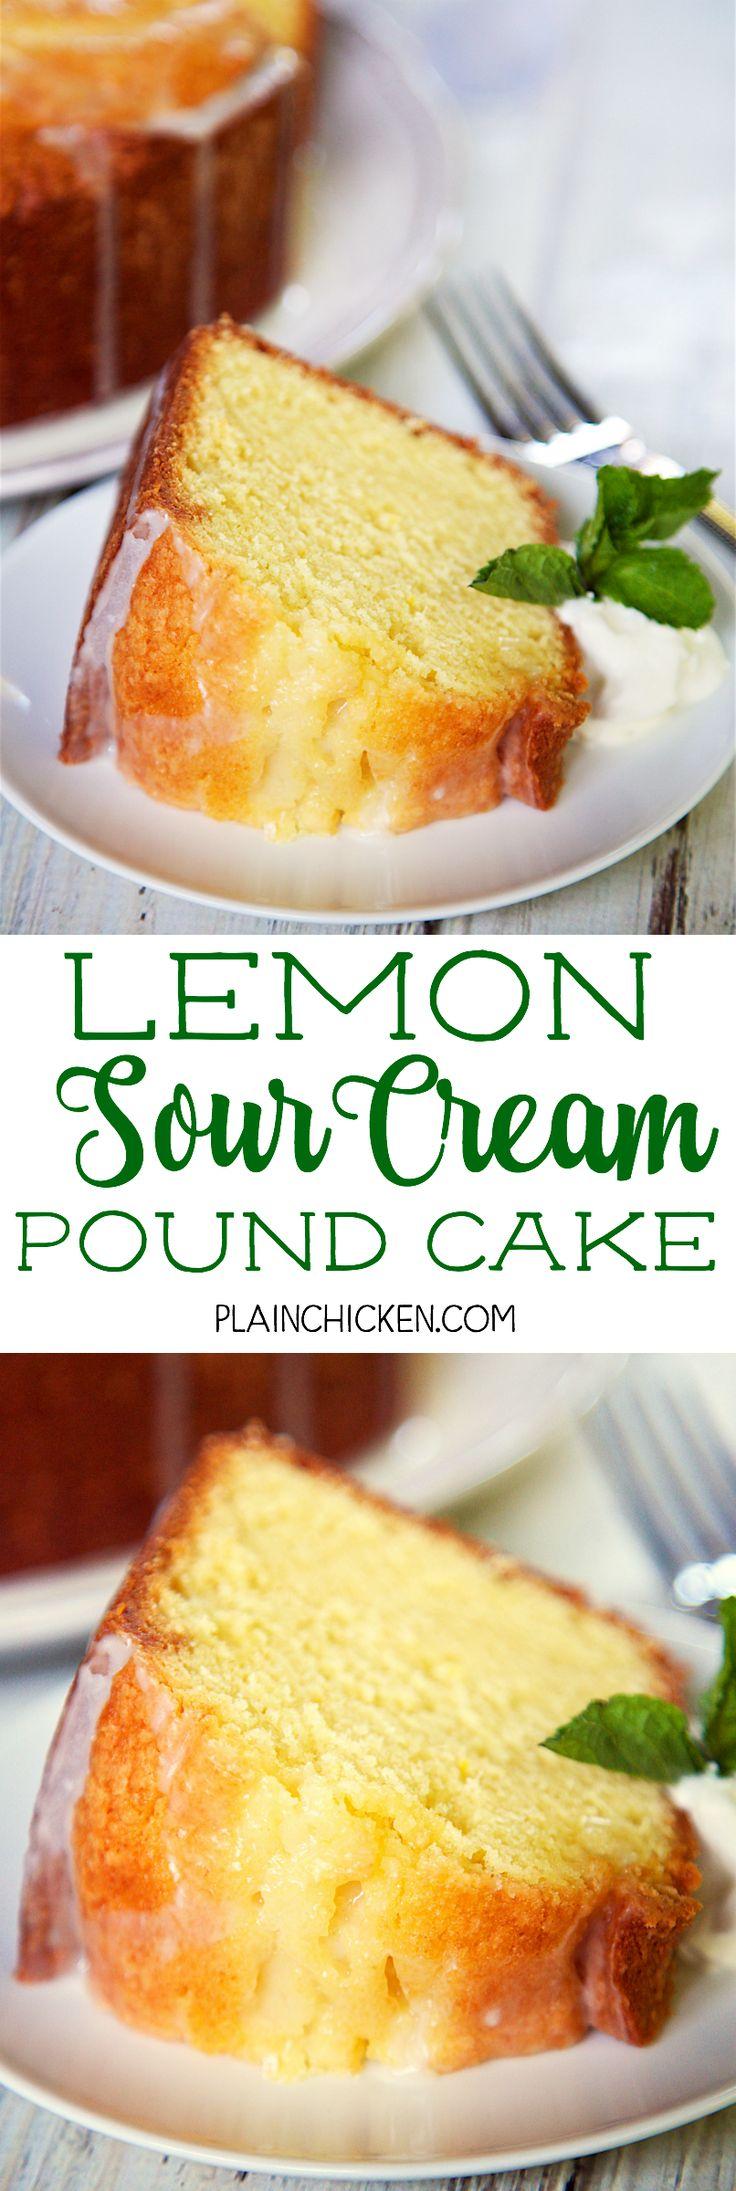 زفاف - Lemon Sour Cream Pound Cake